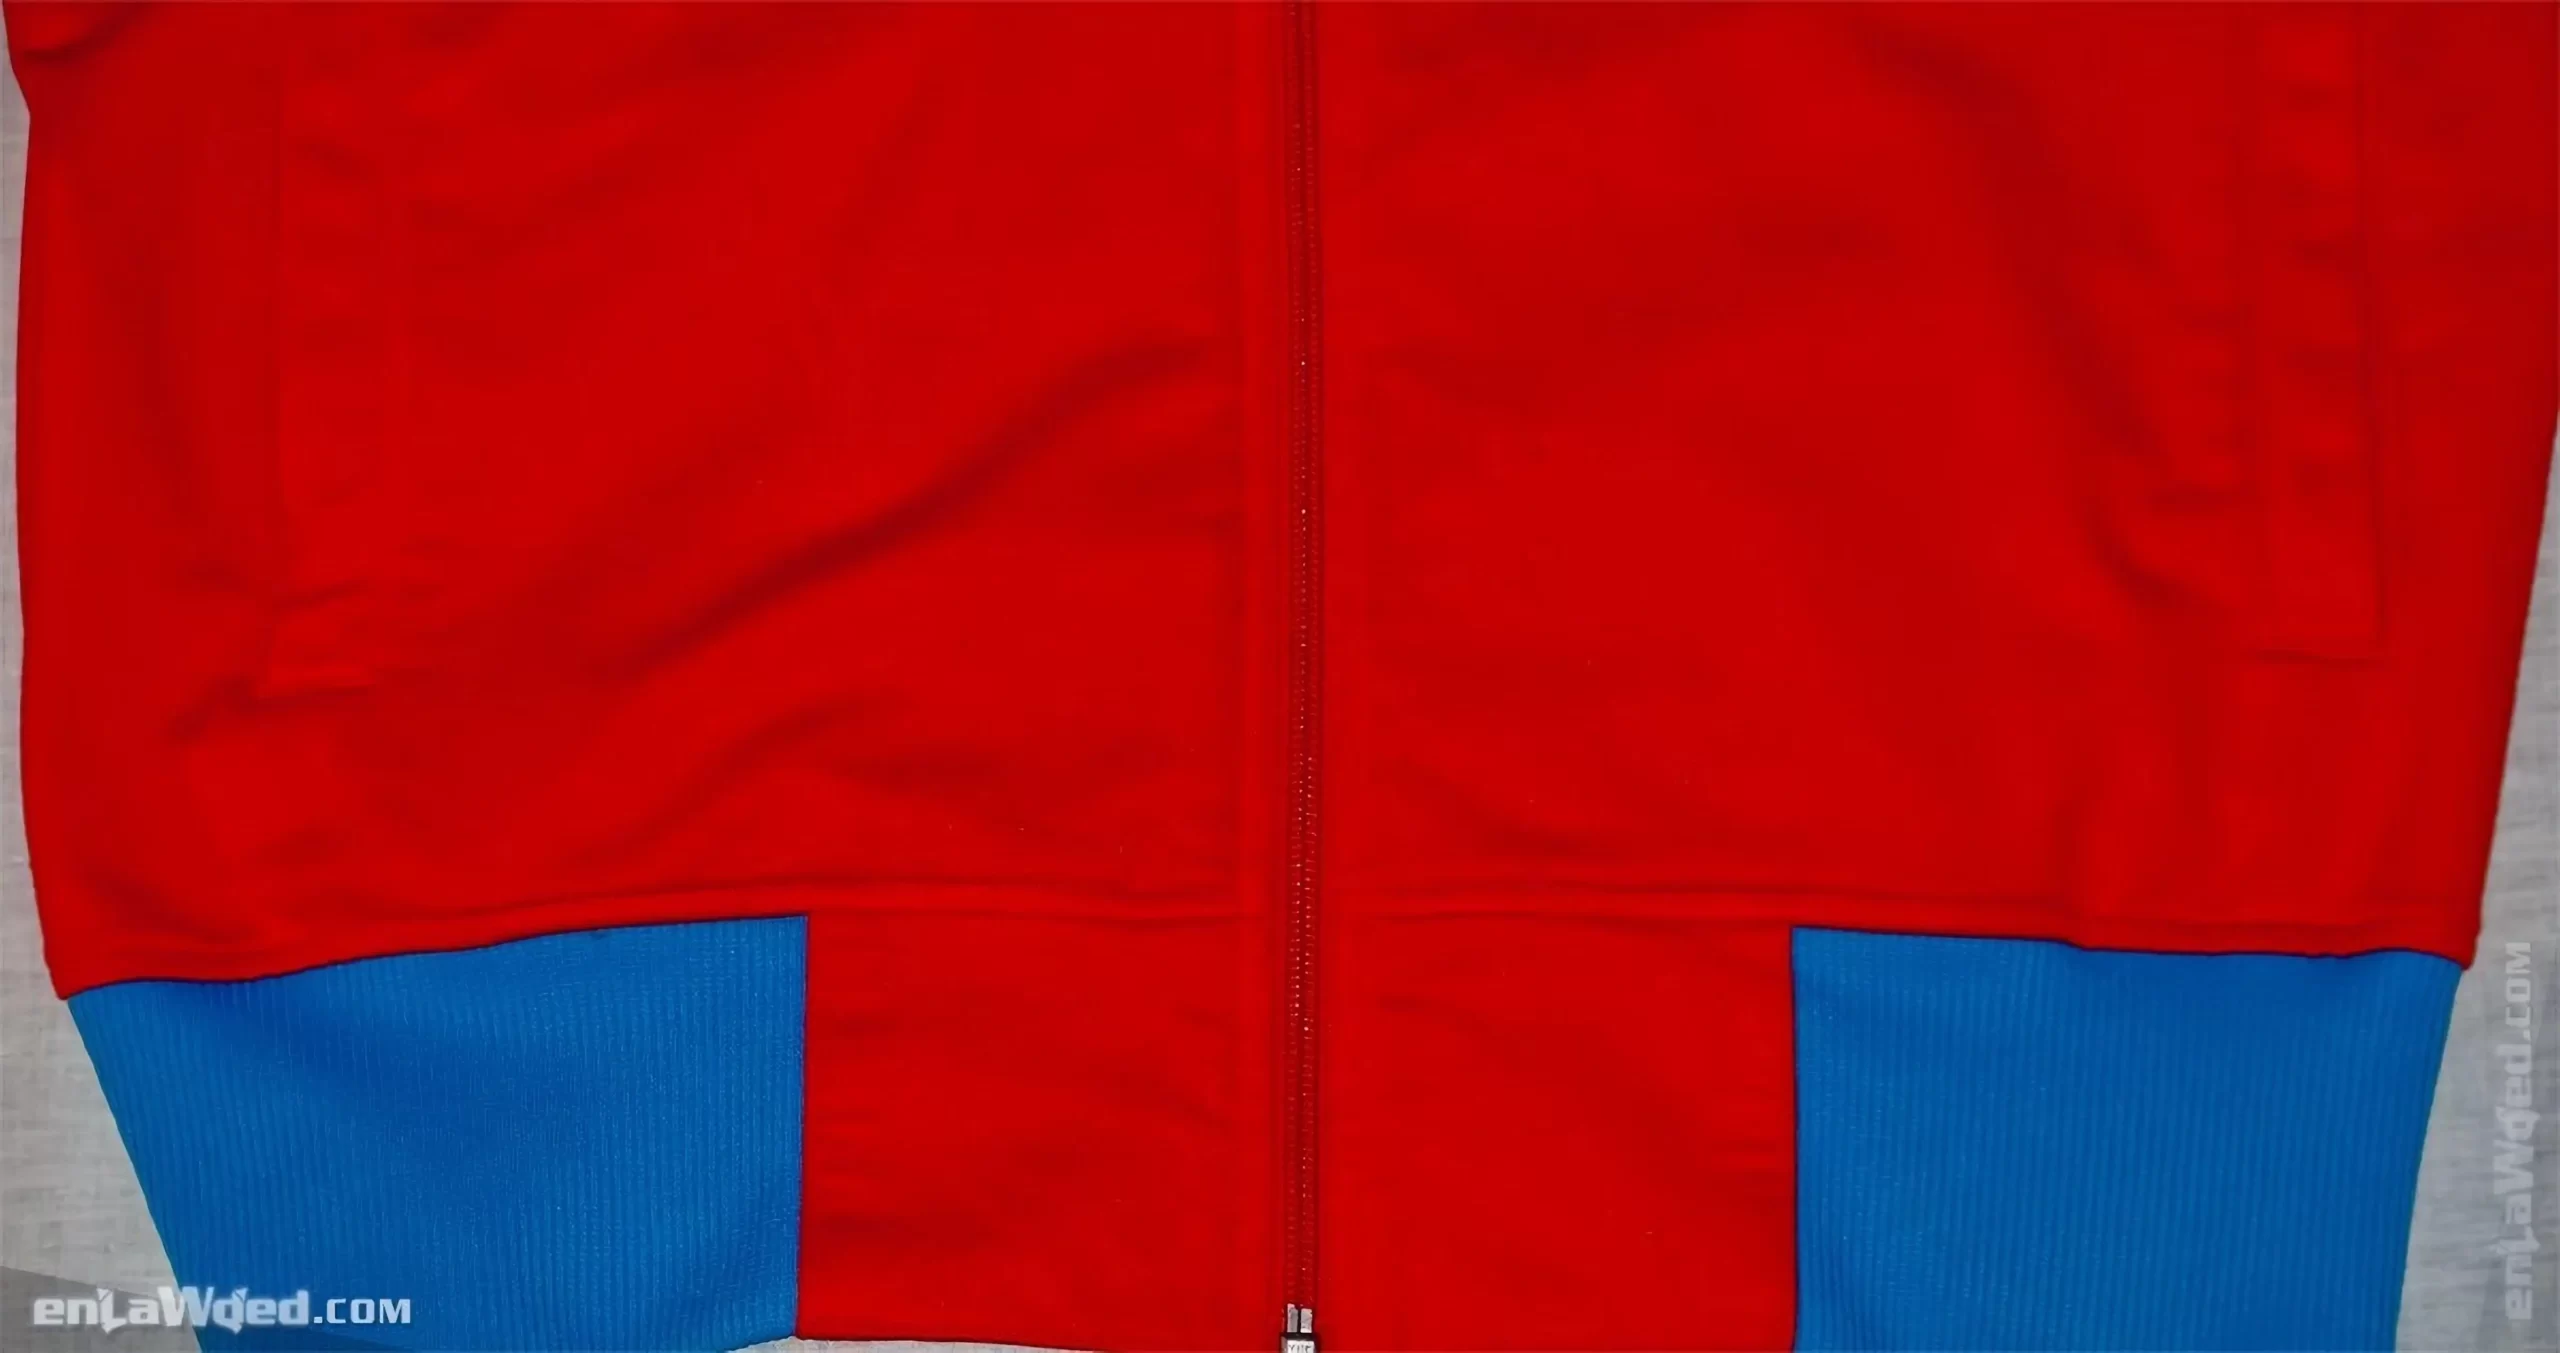 Men’s 2005 Karl-Heinz Rummenigge Bayern TT by Adidas: Colorful (EnLawded.com file #lmchglsymv2n39los5g)